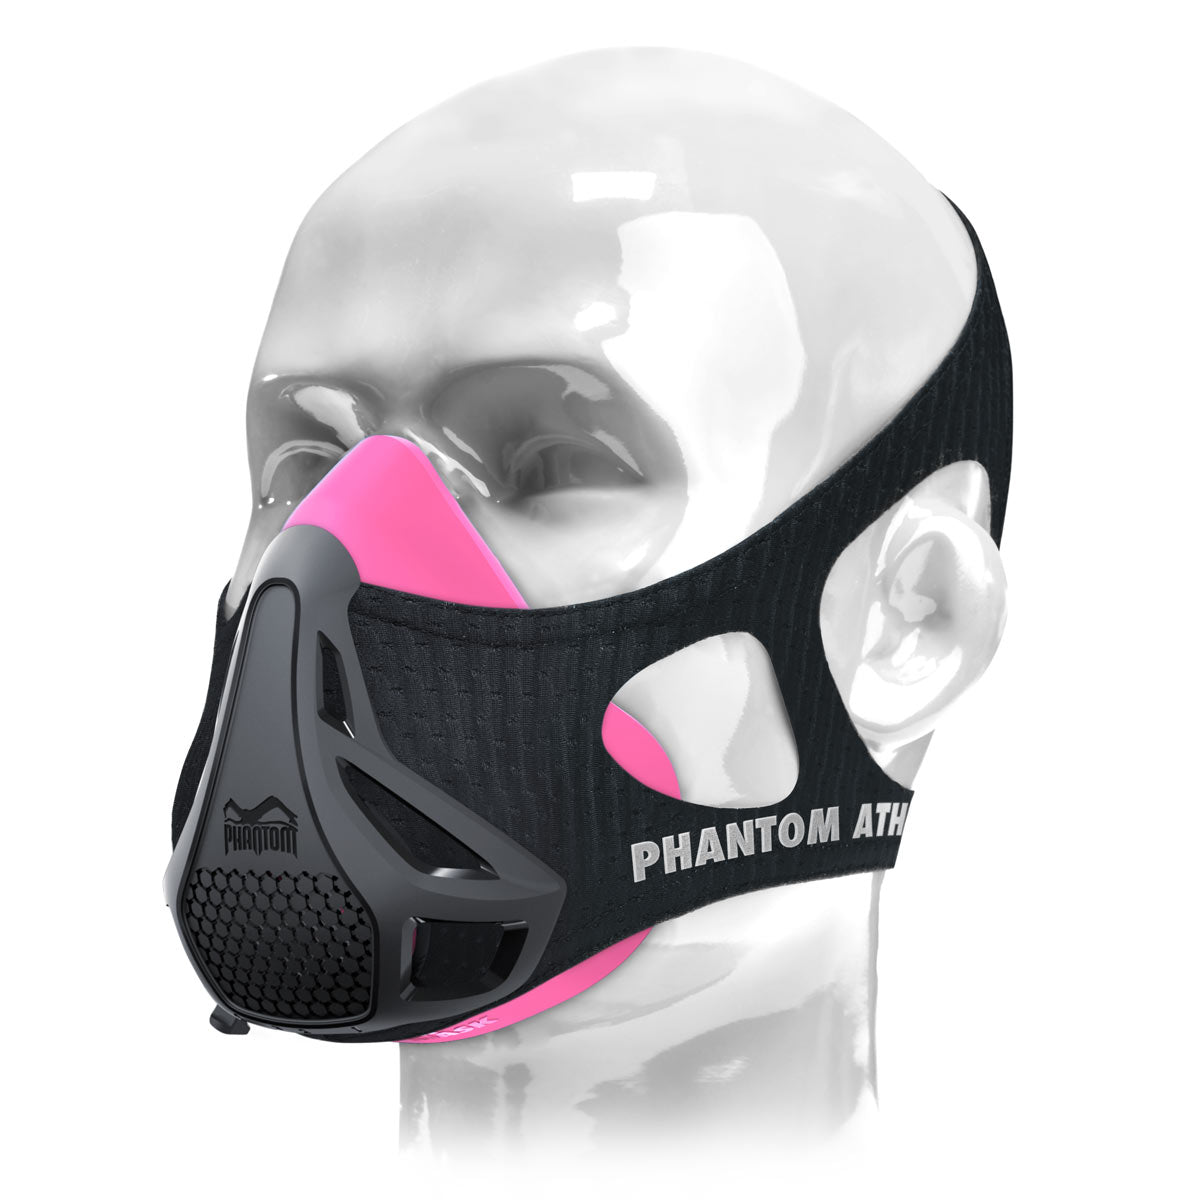 Die Phantom Trainingsmaske. Das Original. Patentiert und ausgezeichnet um deine Fitness auf das nächste Level zu heben. Jetzt in der Farbe Pink/Schwarz.